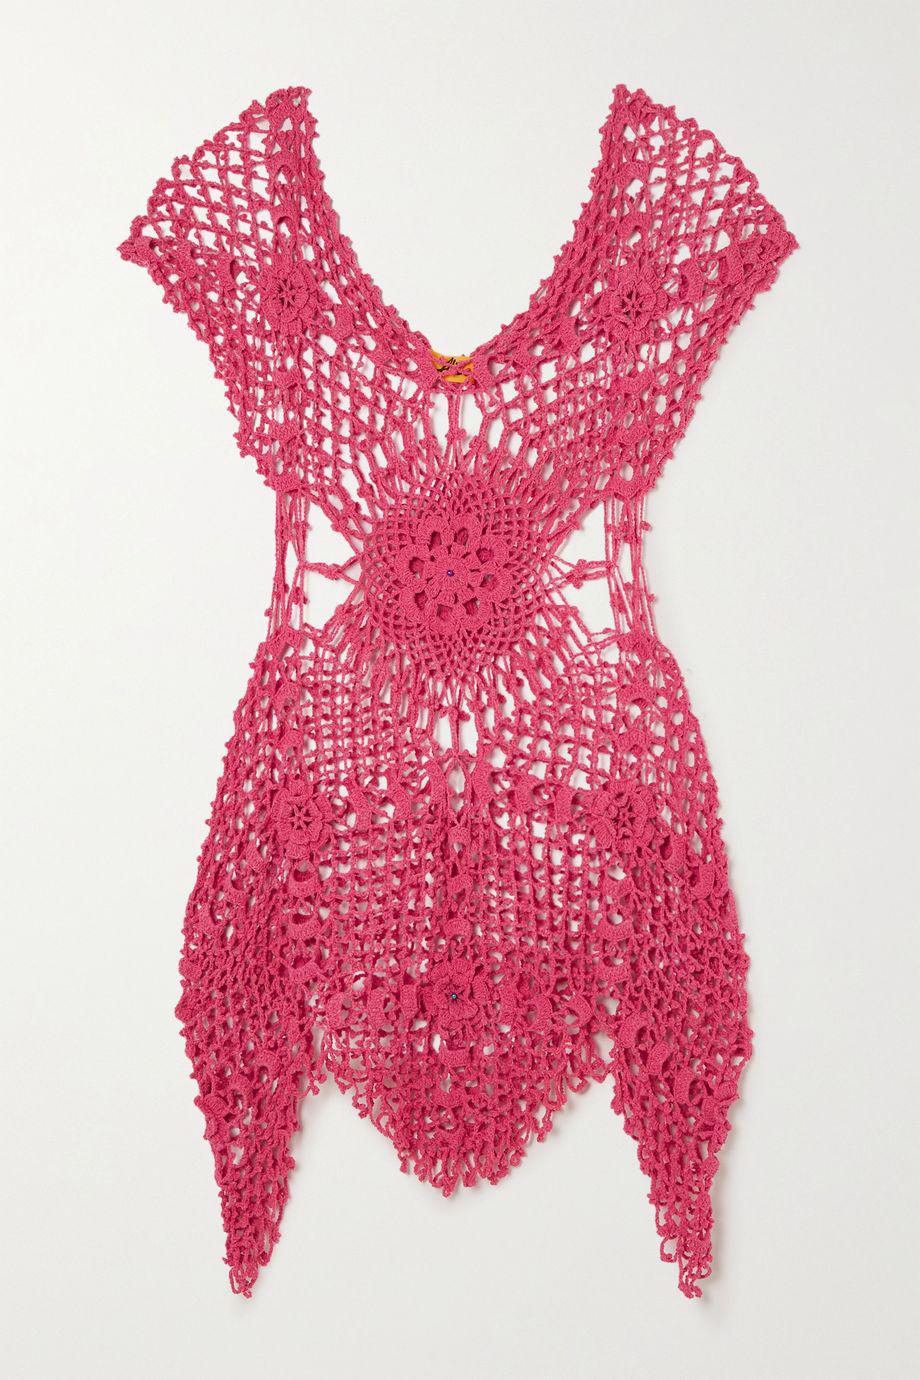 Yell crocheted cotton mini dress by ALIX PINHO